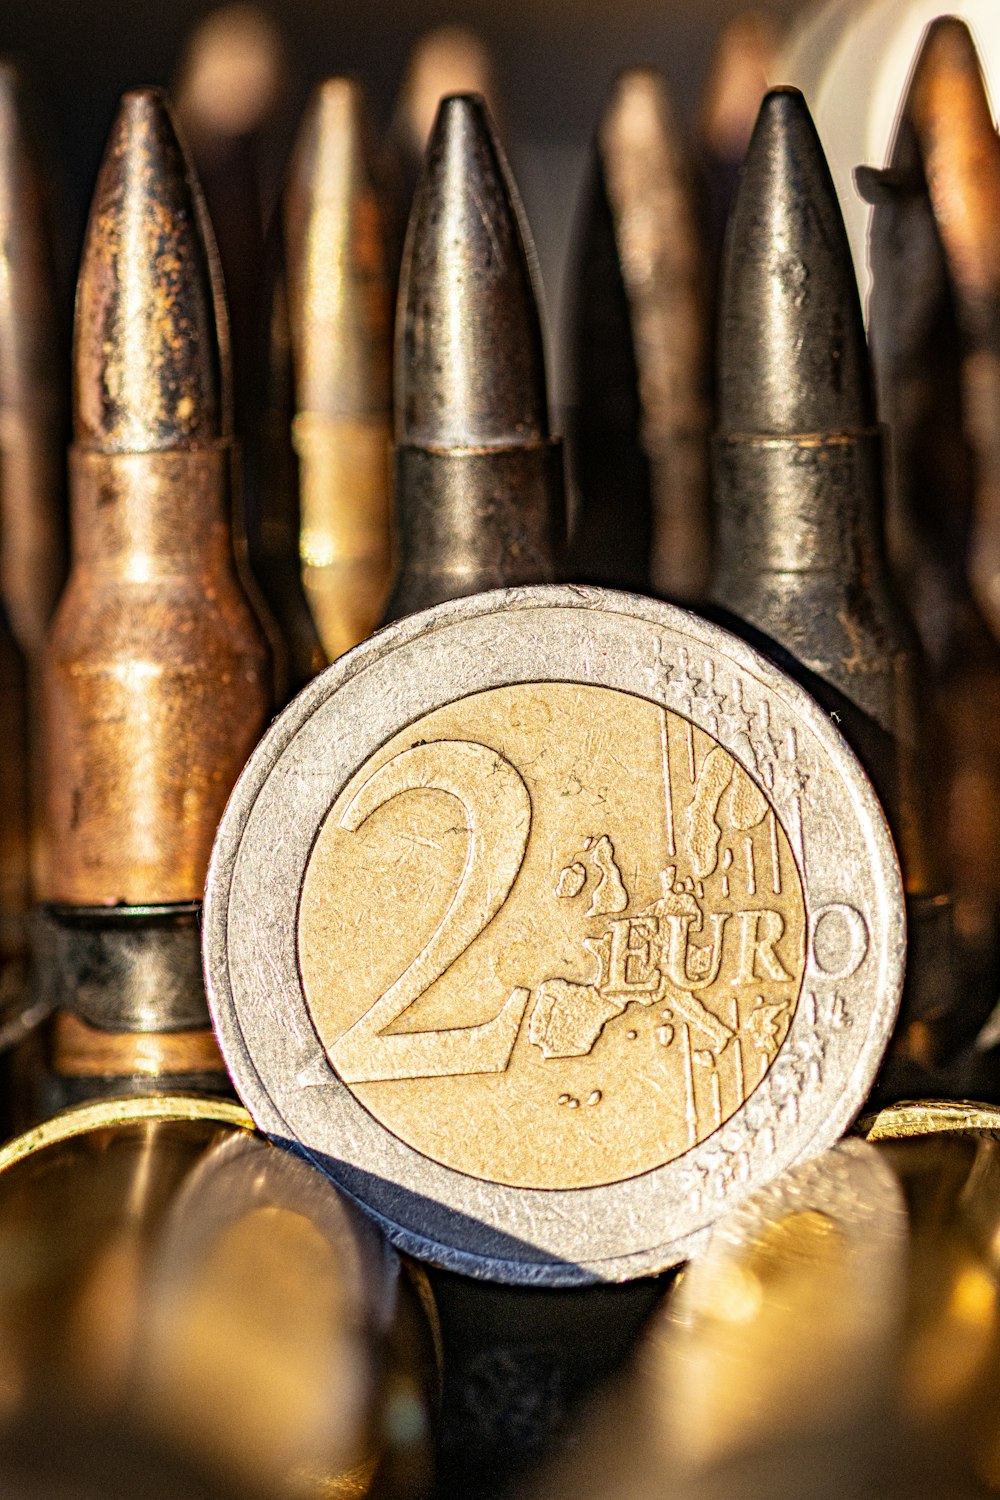 弾丸の樽の山の上に乗せられた2ユーロ硬貨